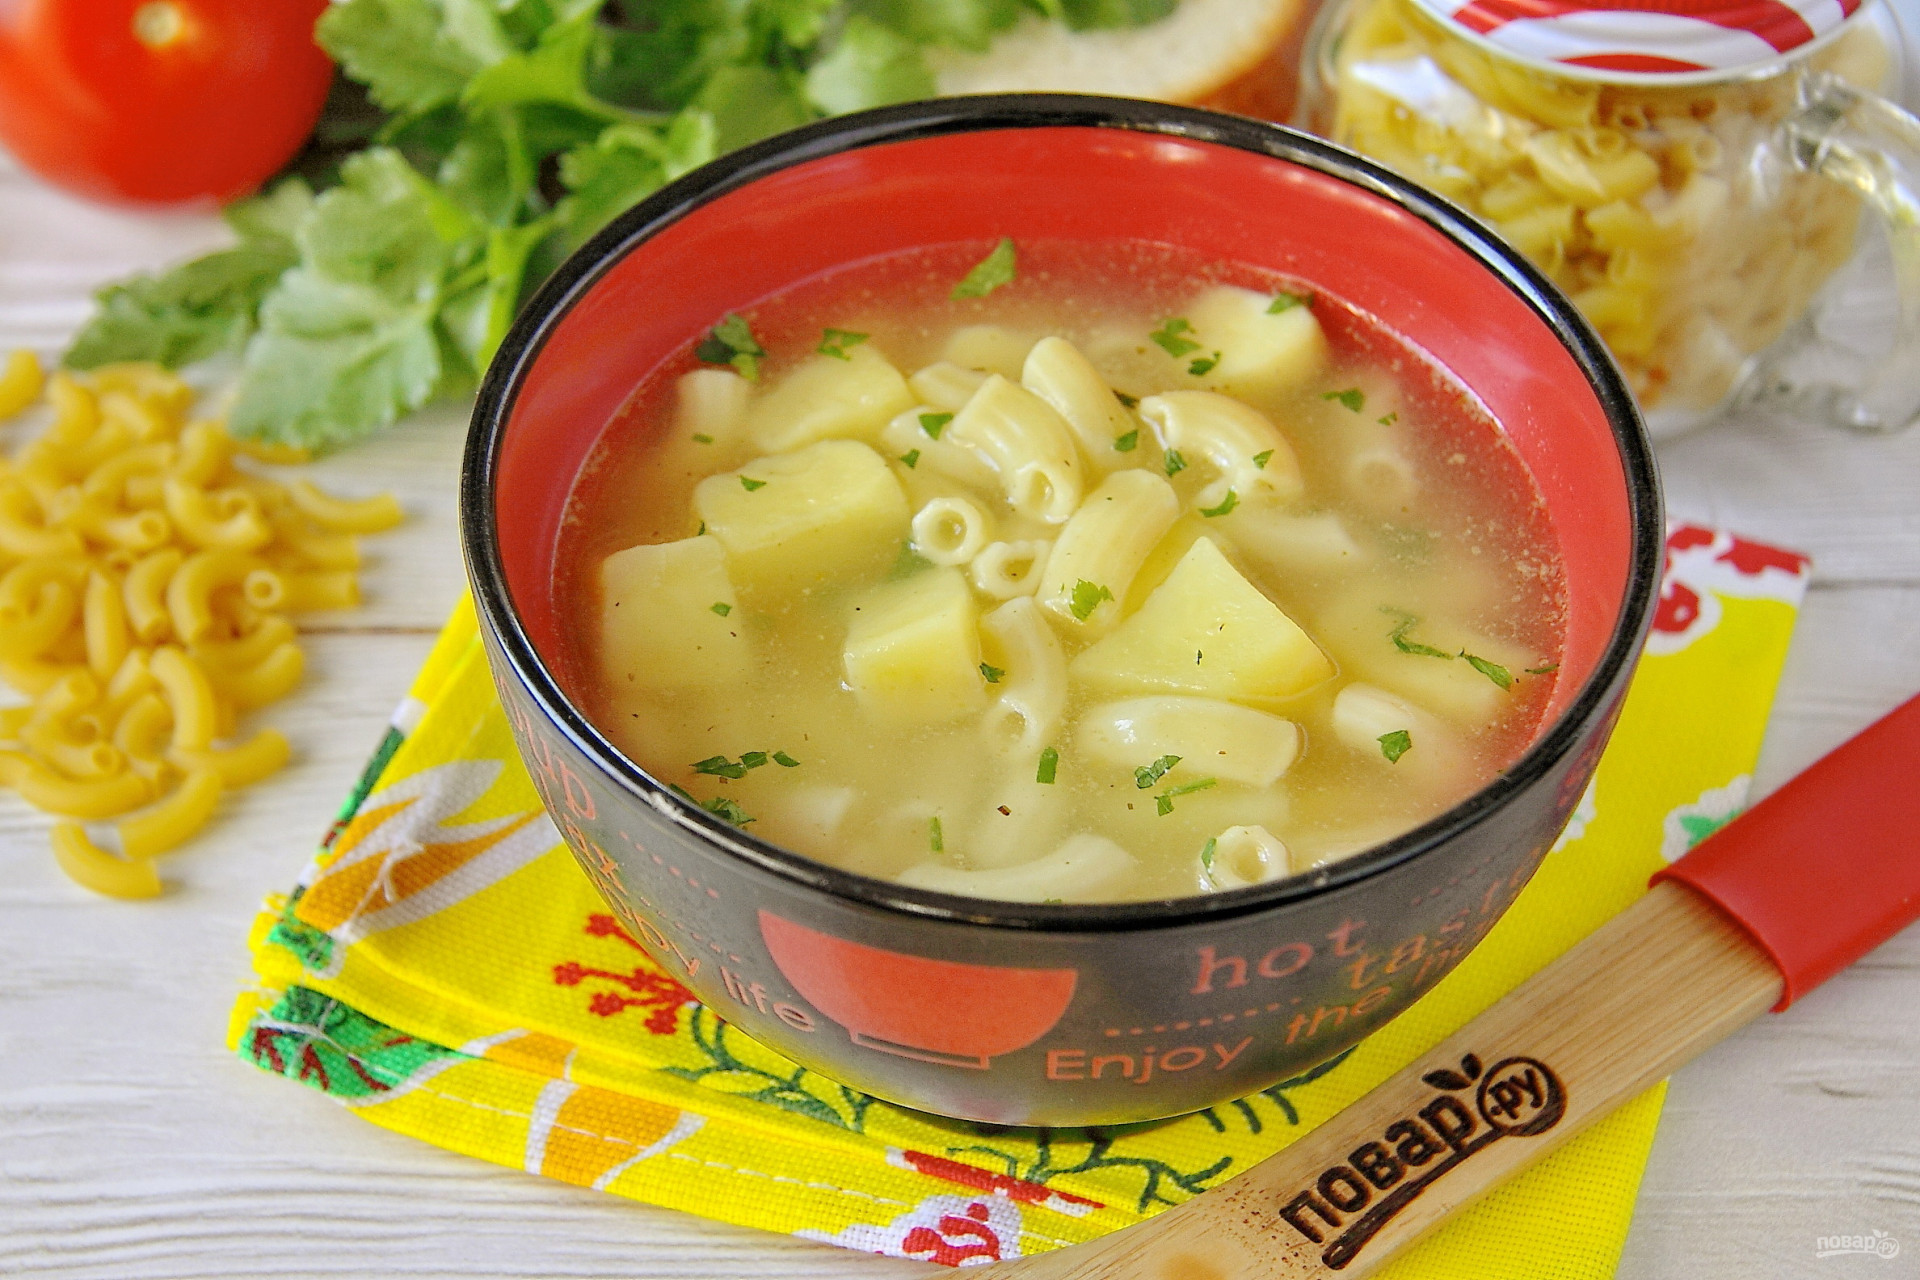 Суп из макарон и картофеля сколько в нем калорий